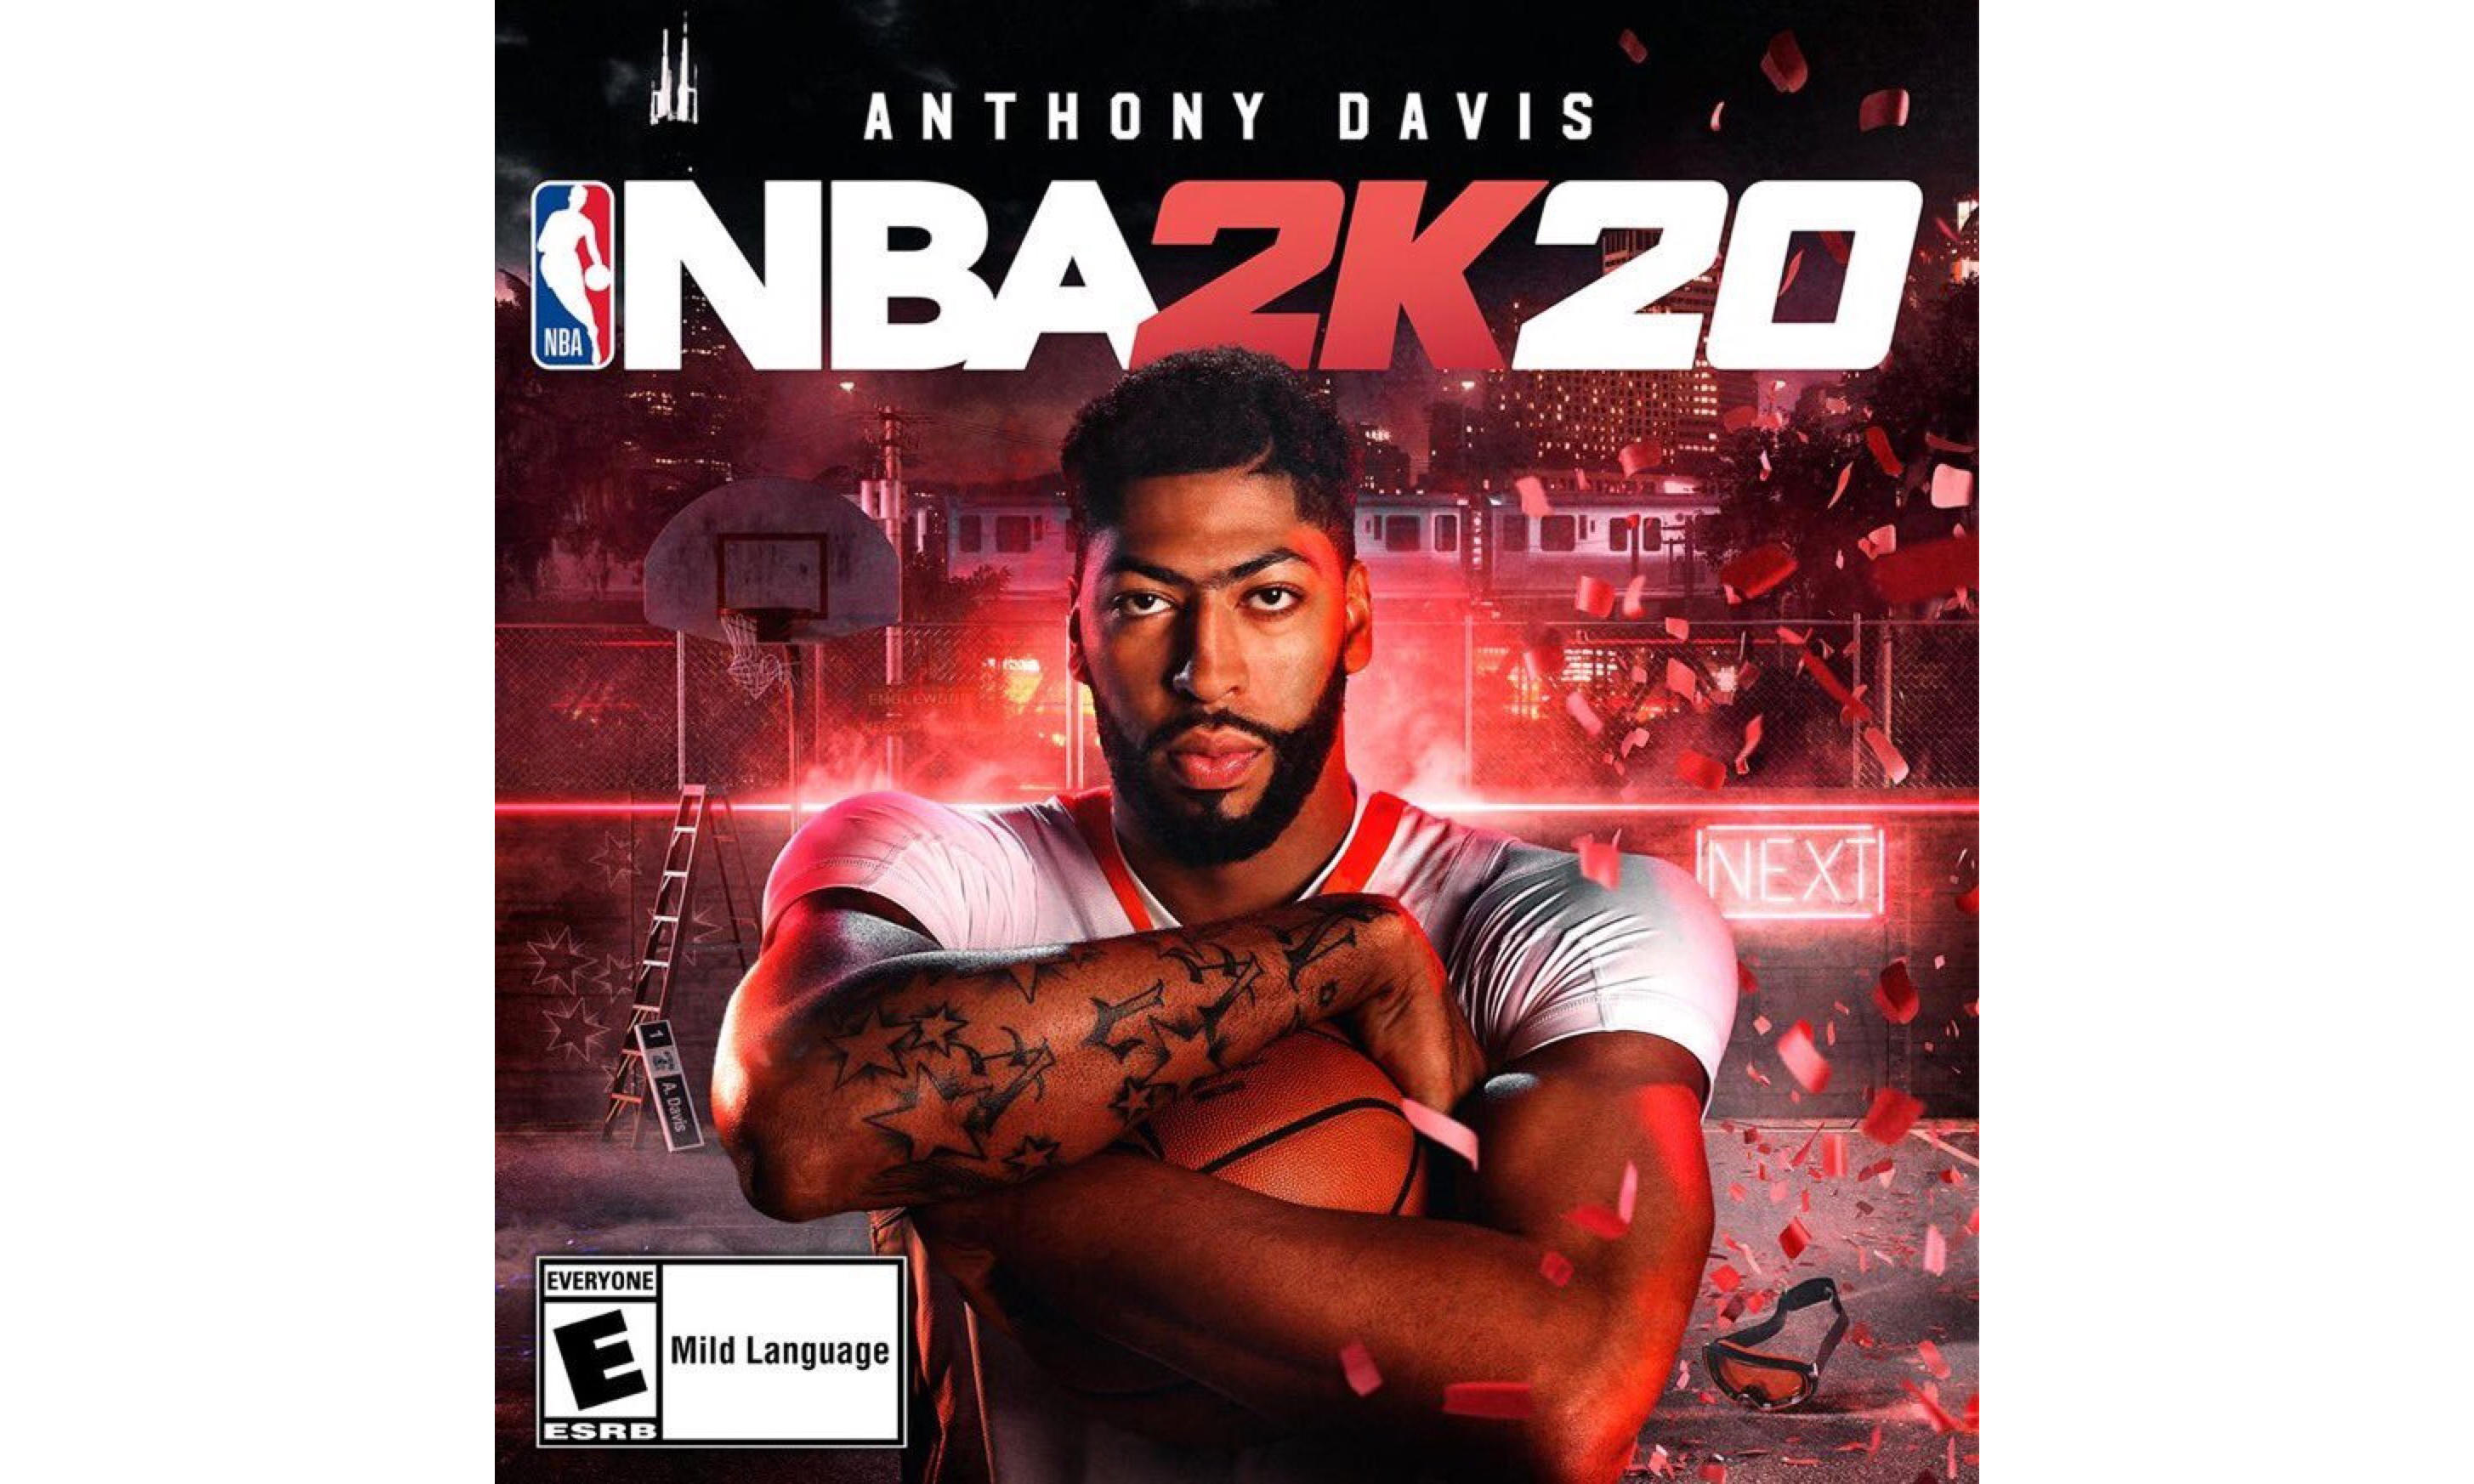 安东尼·戴维斯成为 NBA 2K20 封面代言人